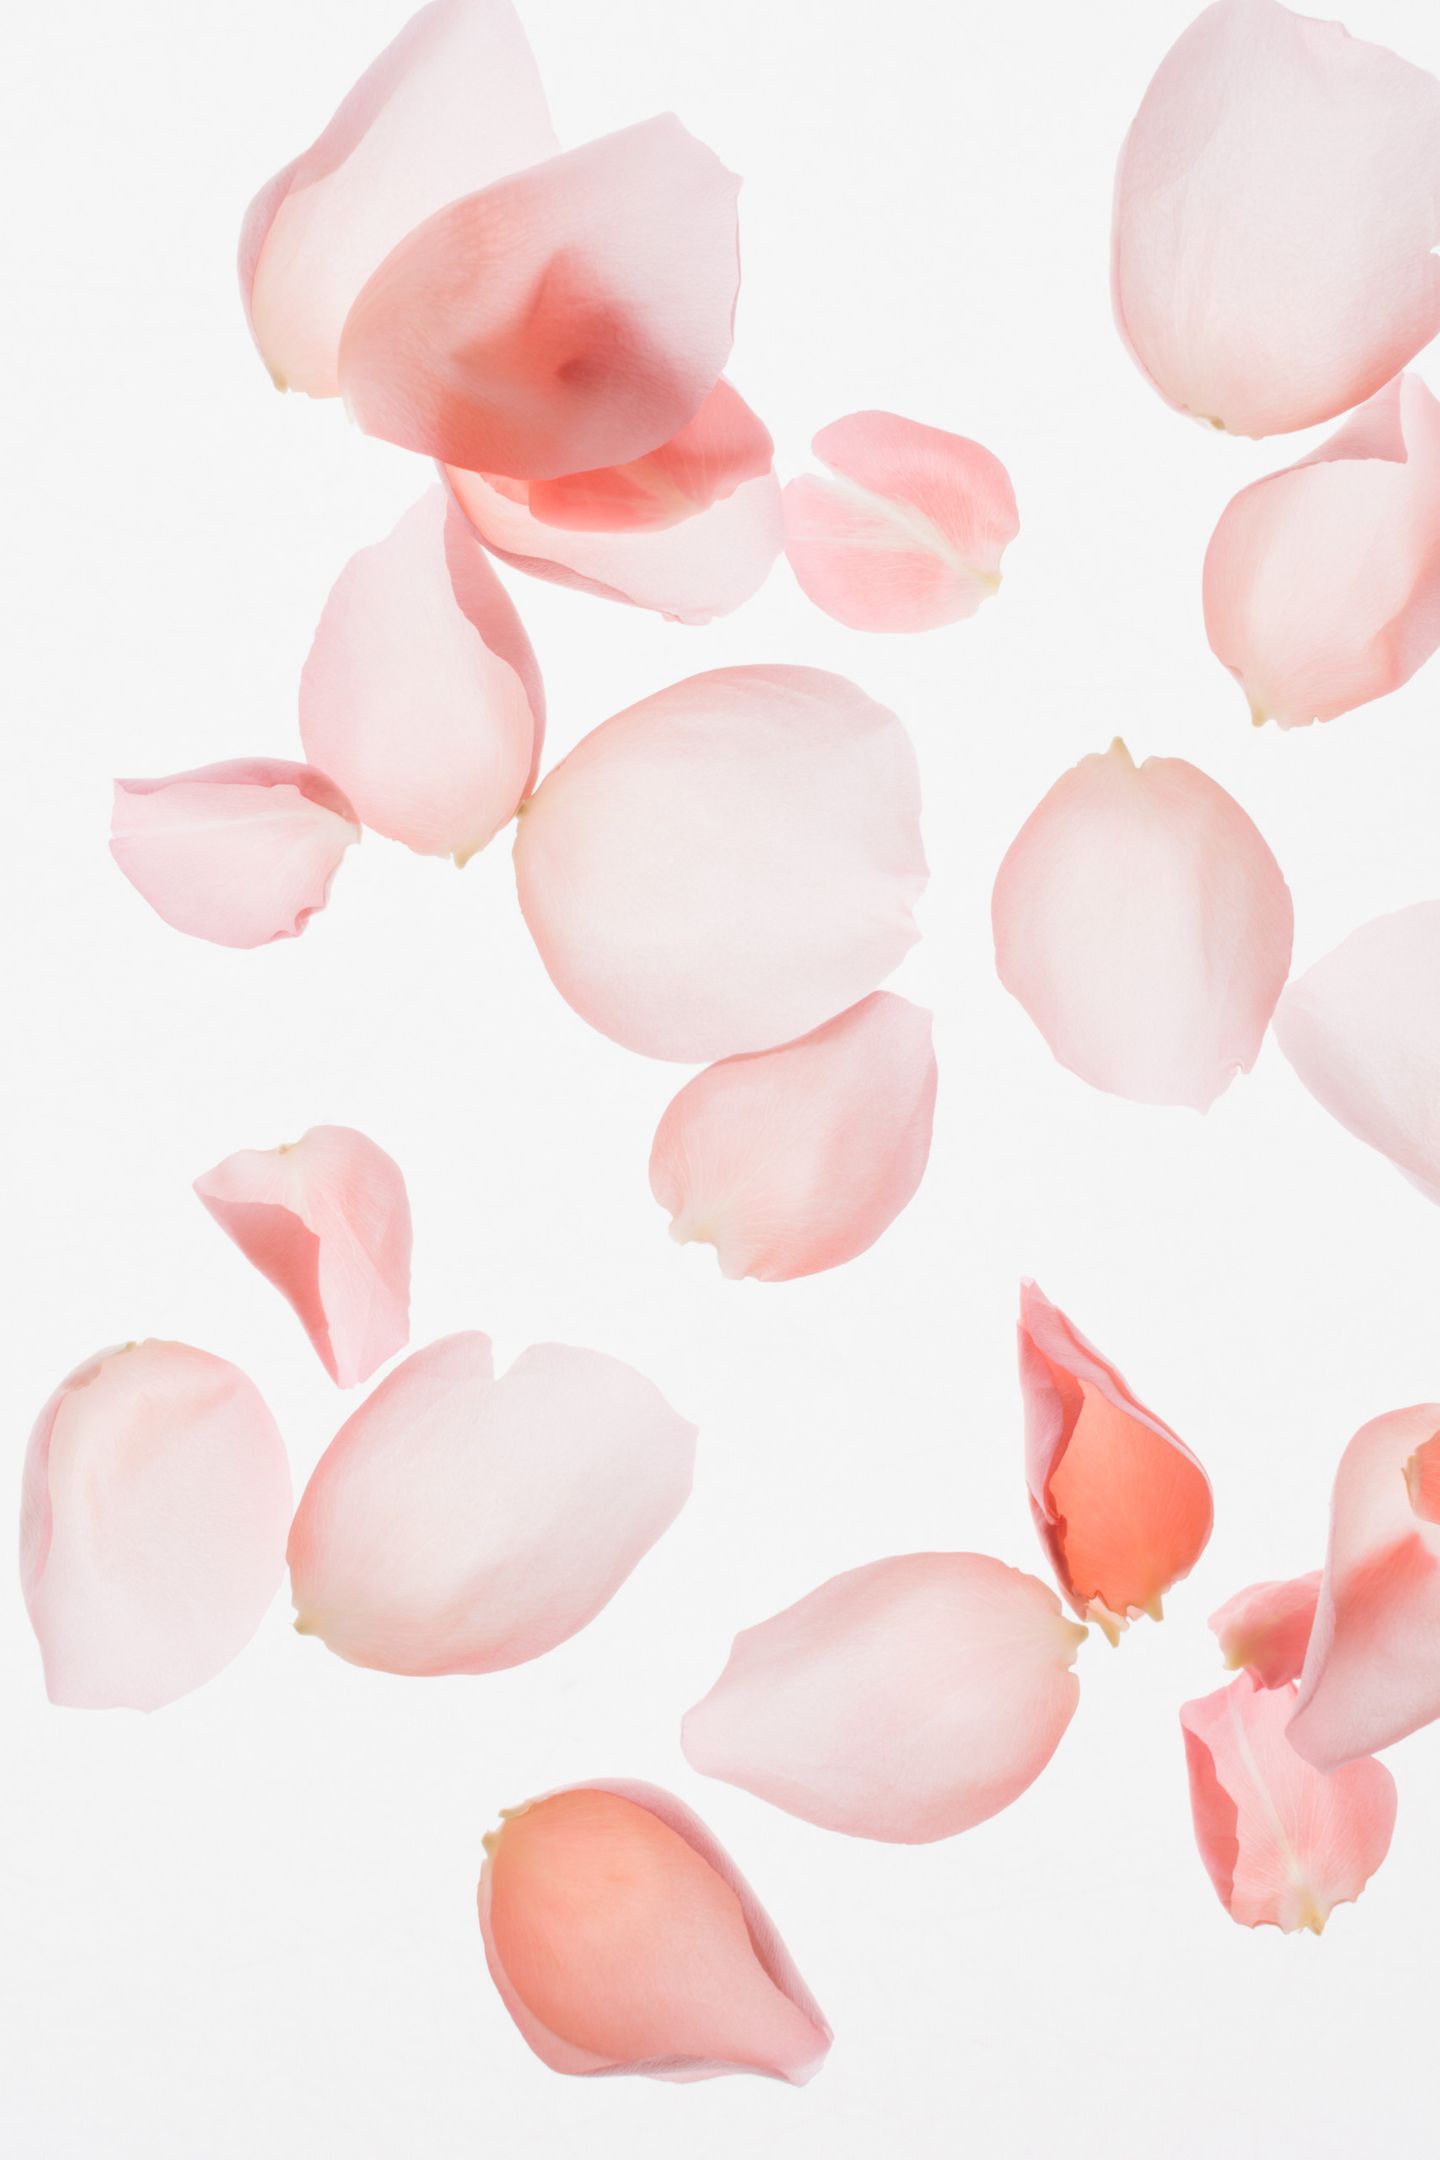 Rose petal floral background